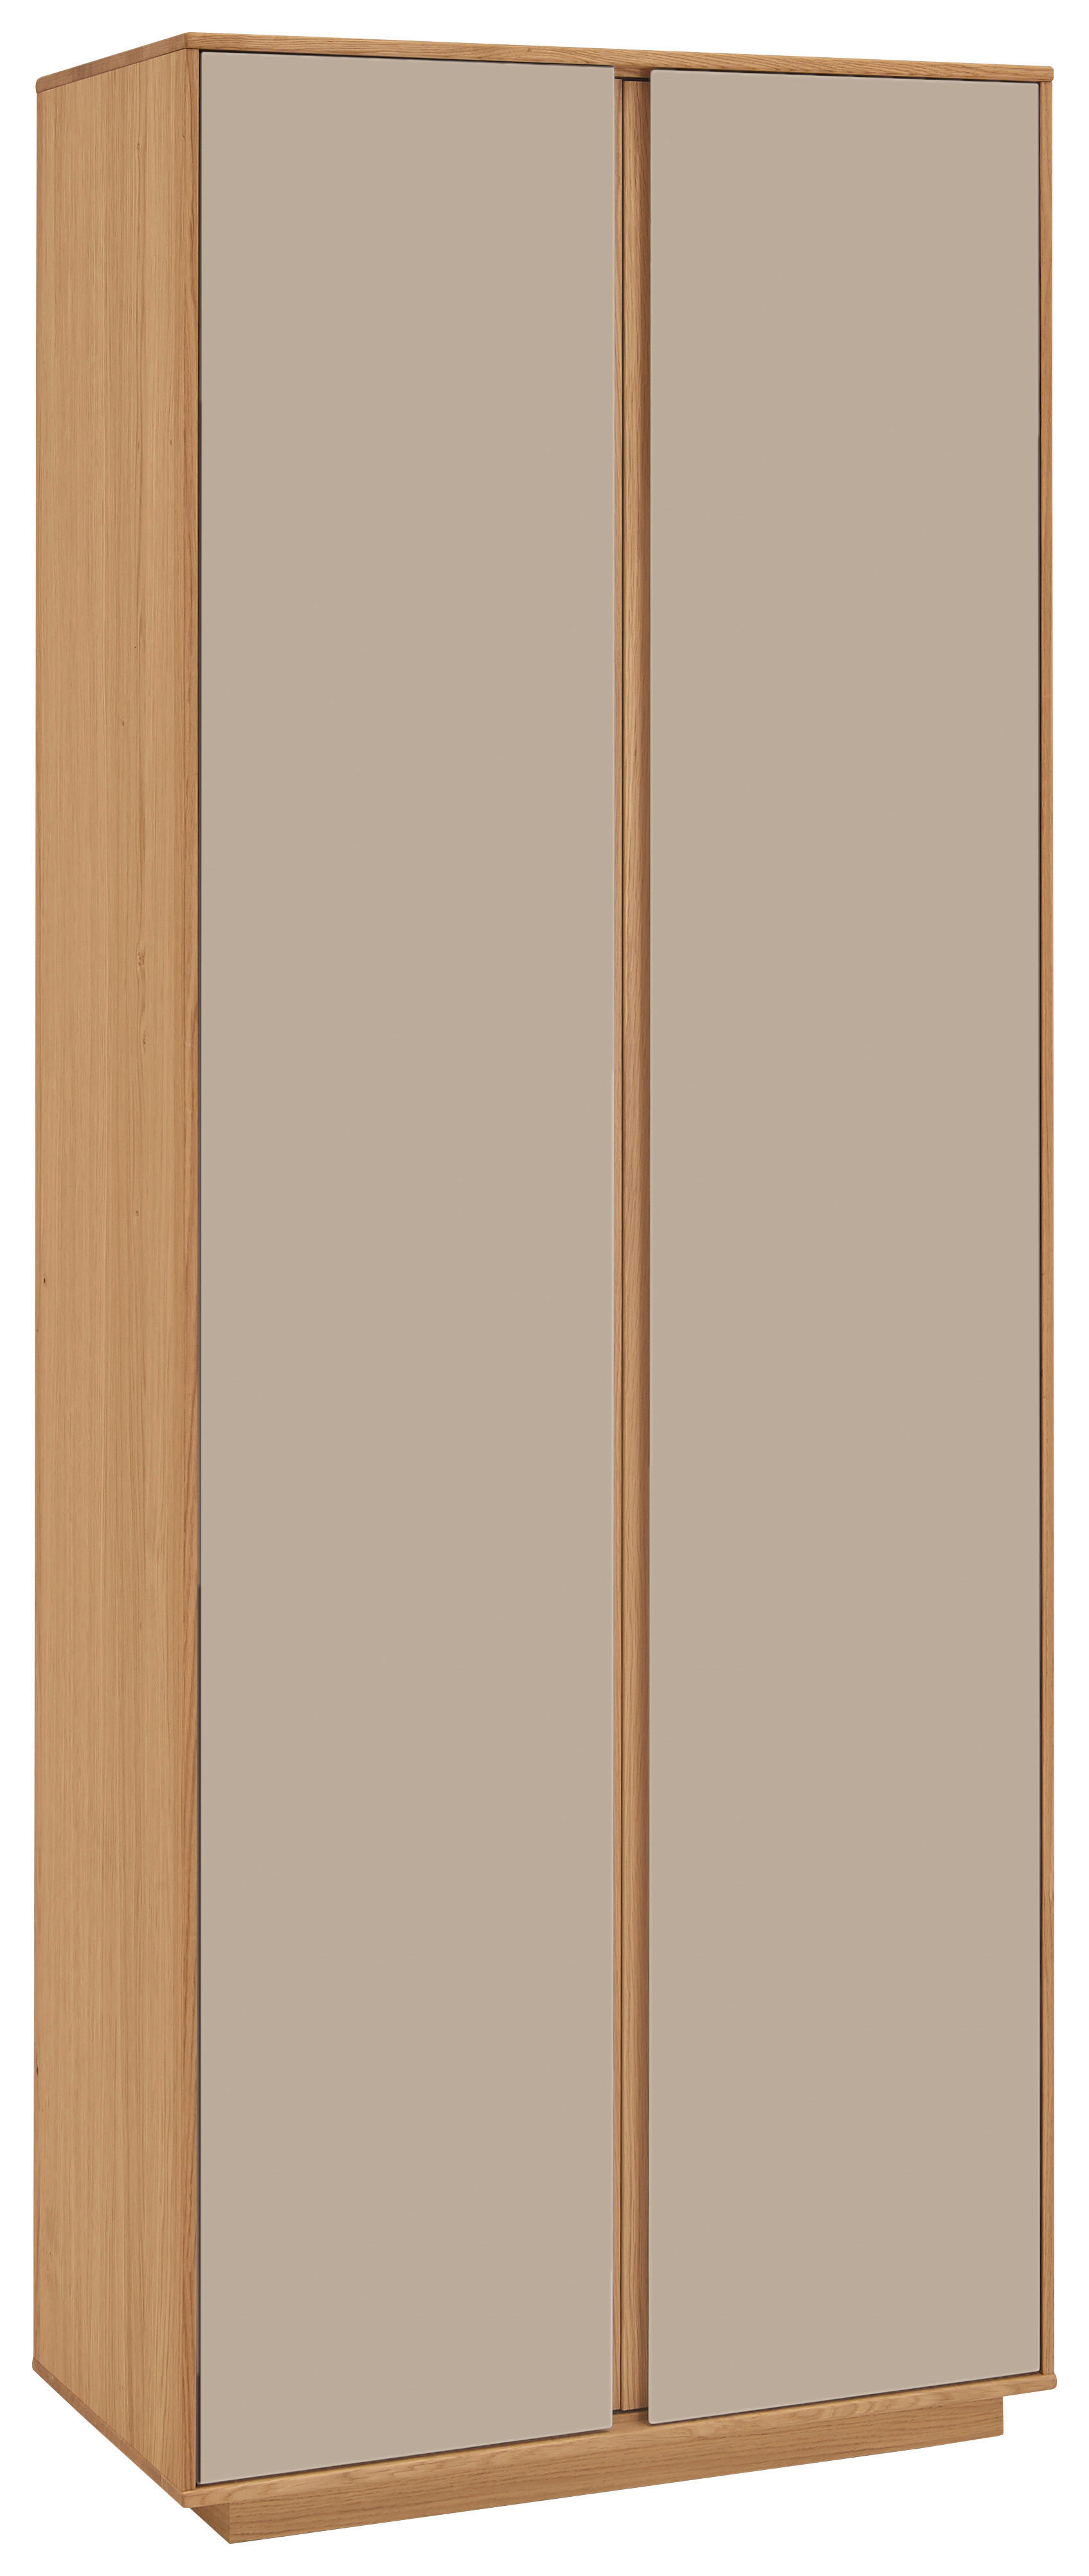 GARDEROBENSCHRANK 72/193/37 cm  - Sandfarben/Eichefarben, Design, Holz/Holzwerkstoff (72/193/37cm)